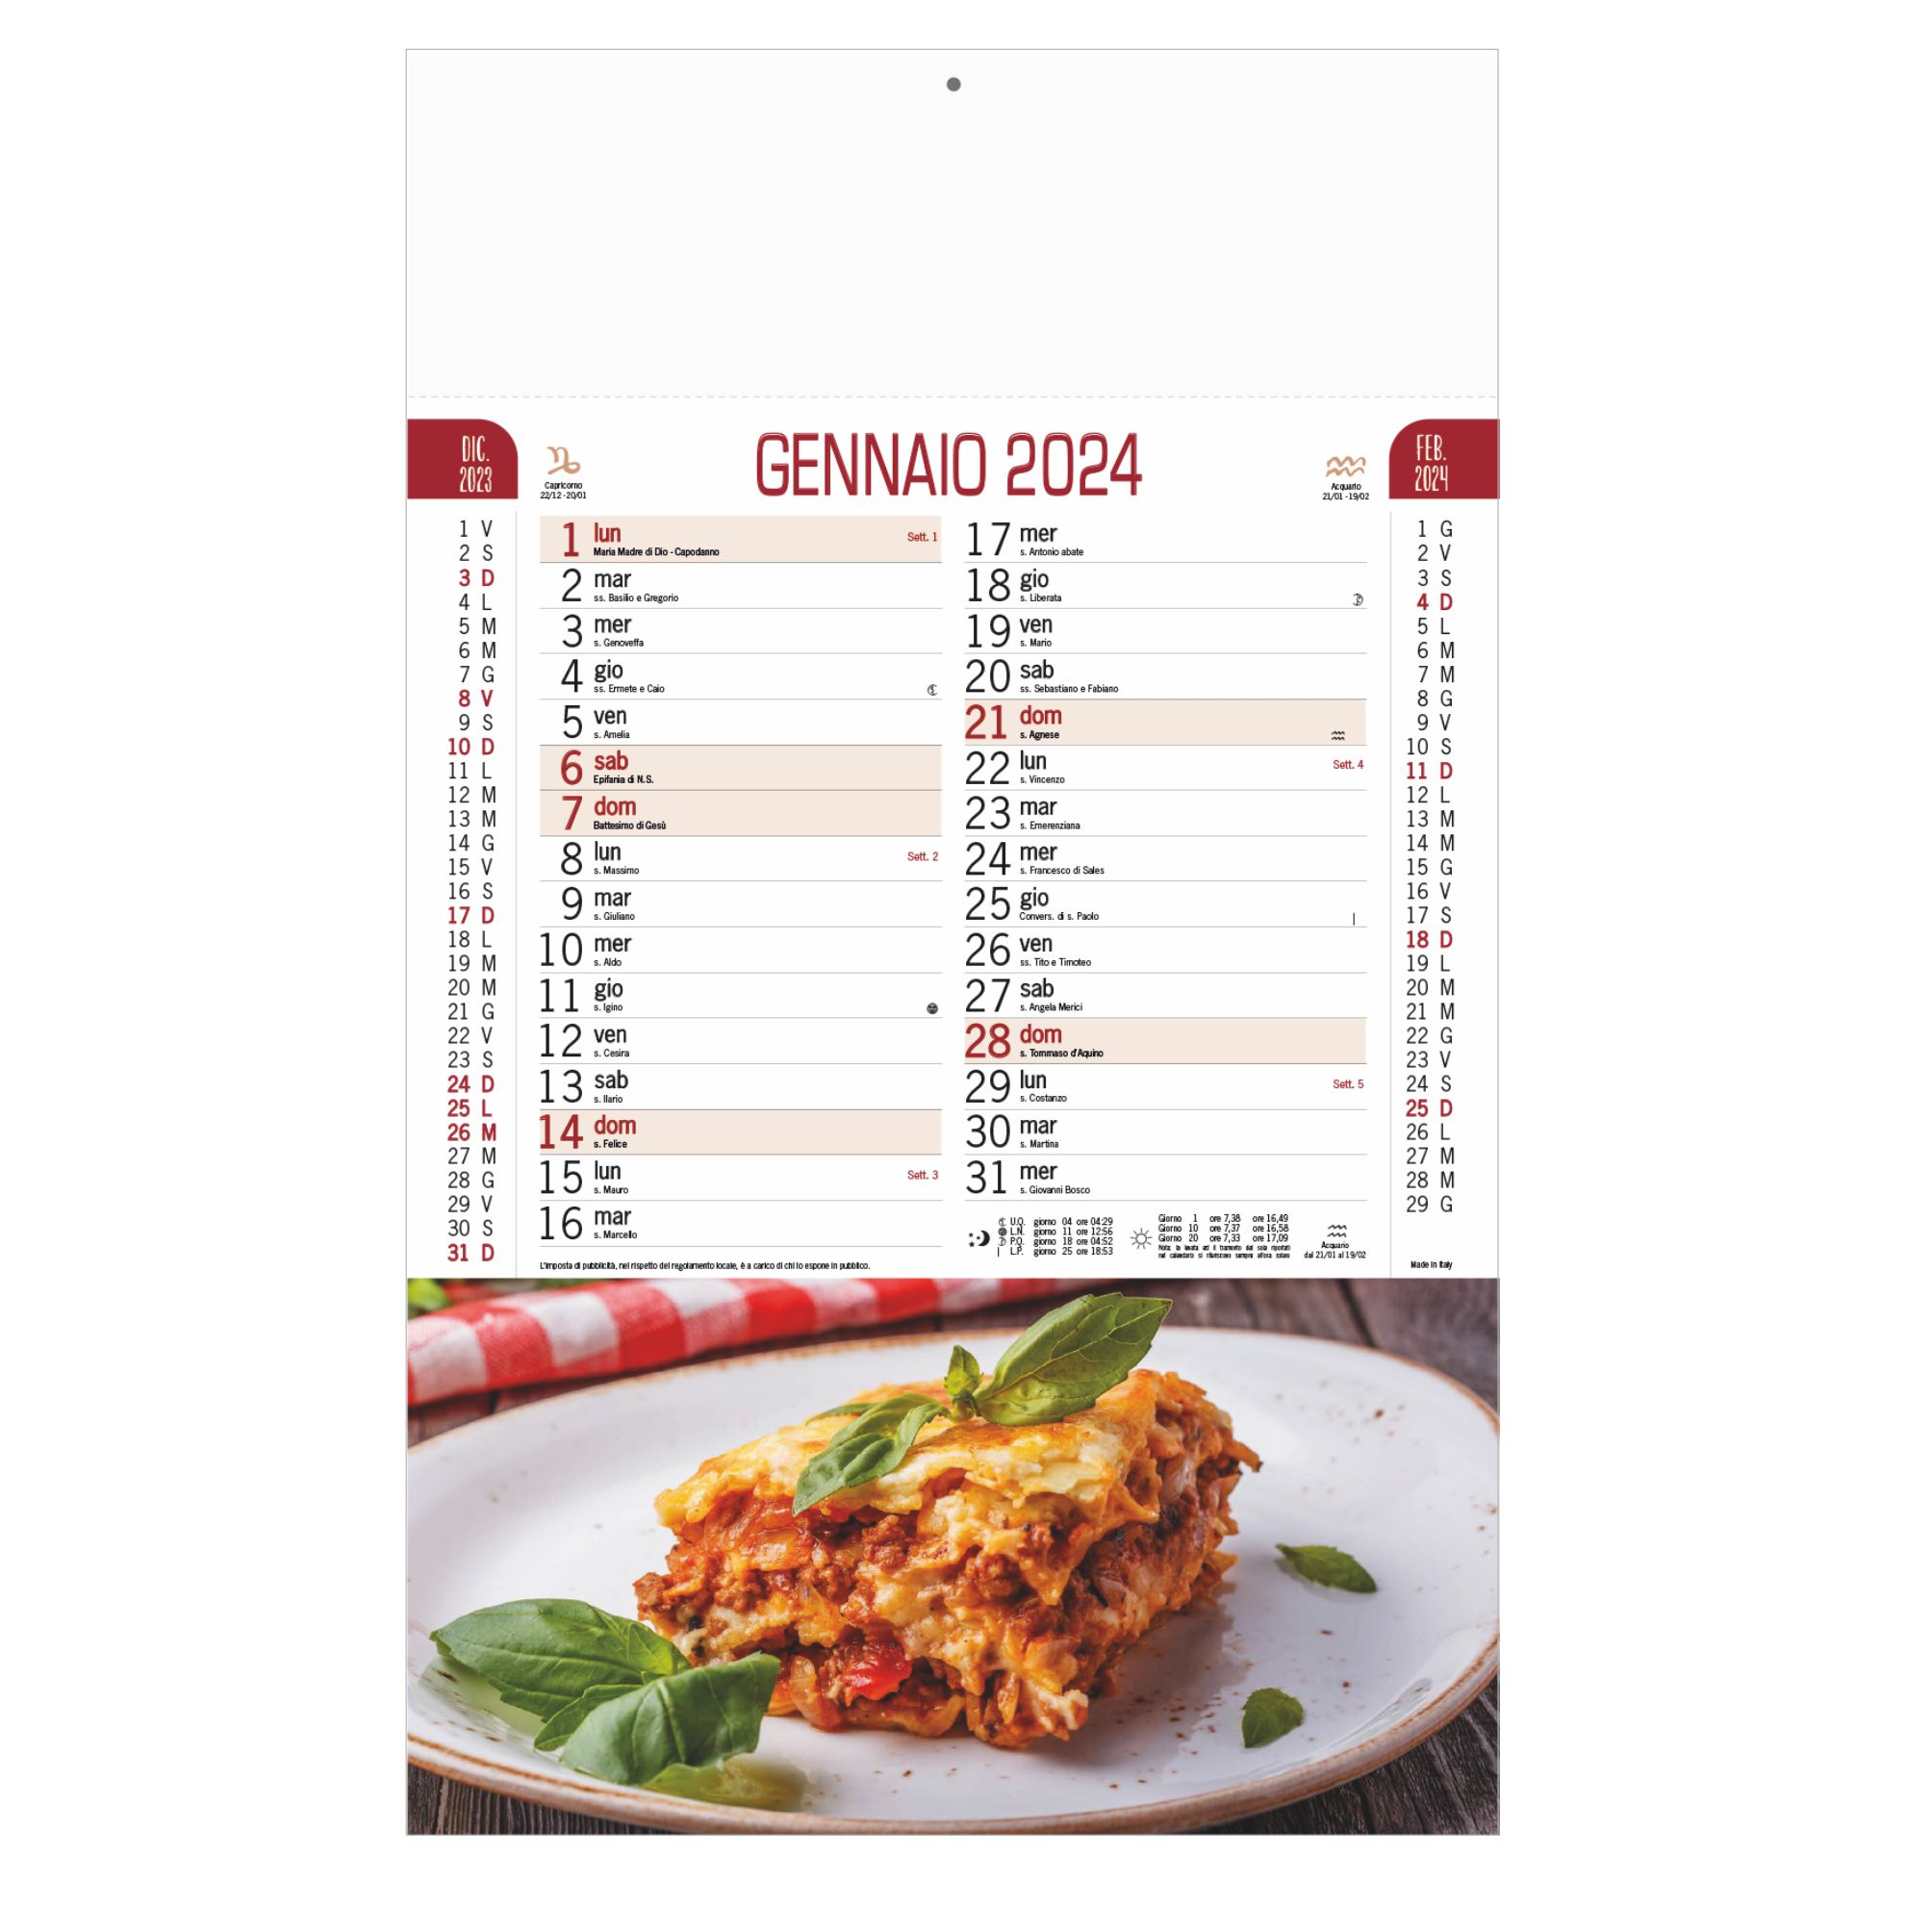 b-04-calendario-gastronomia-nc.jpg